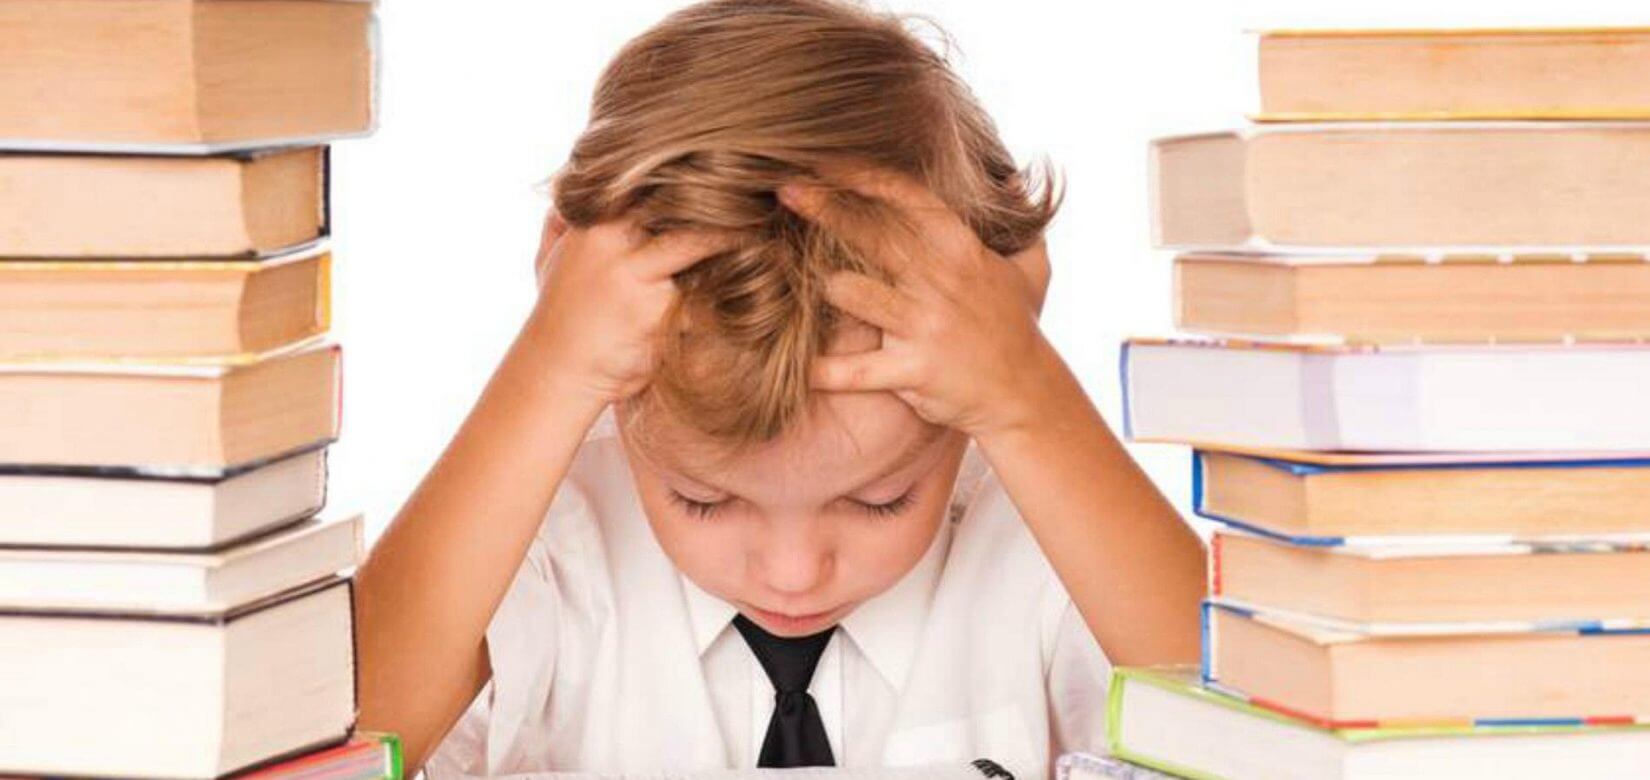 Πώς θα αντιμετωπίσετε το άγχος του παιδιού σας την περίοδο των σχολικών εξετάσεων;